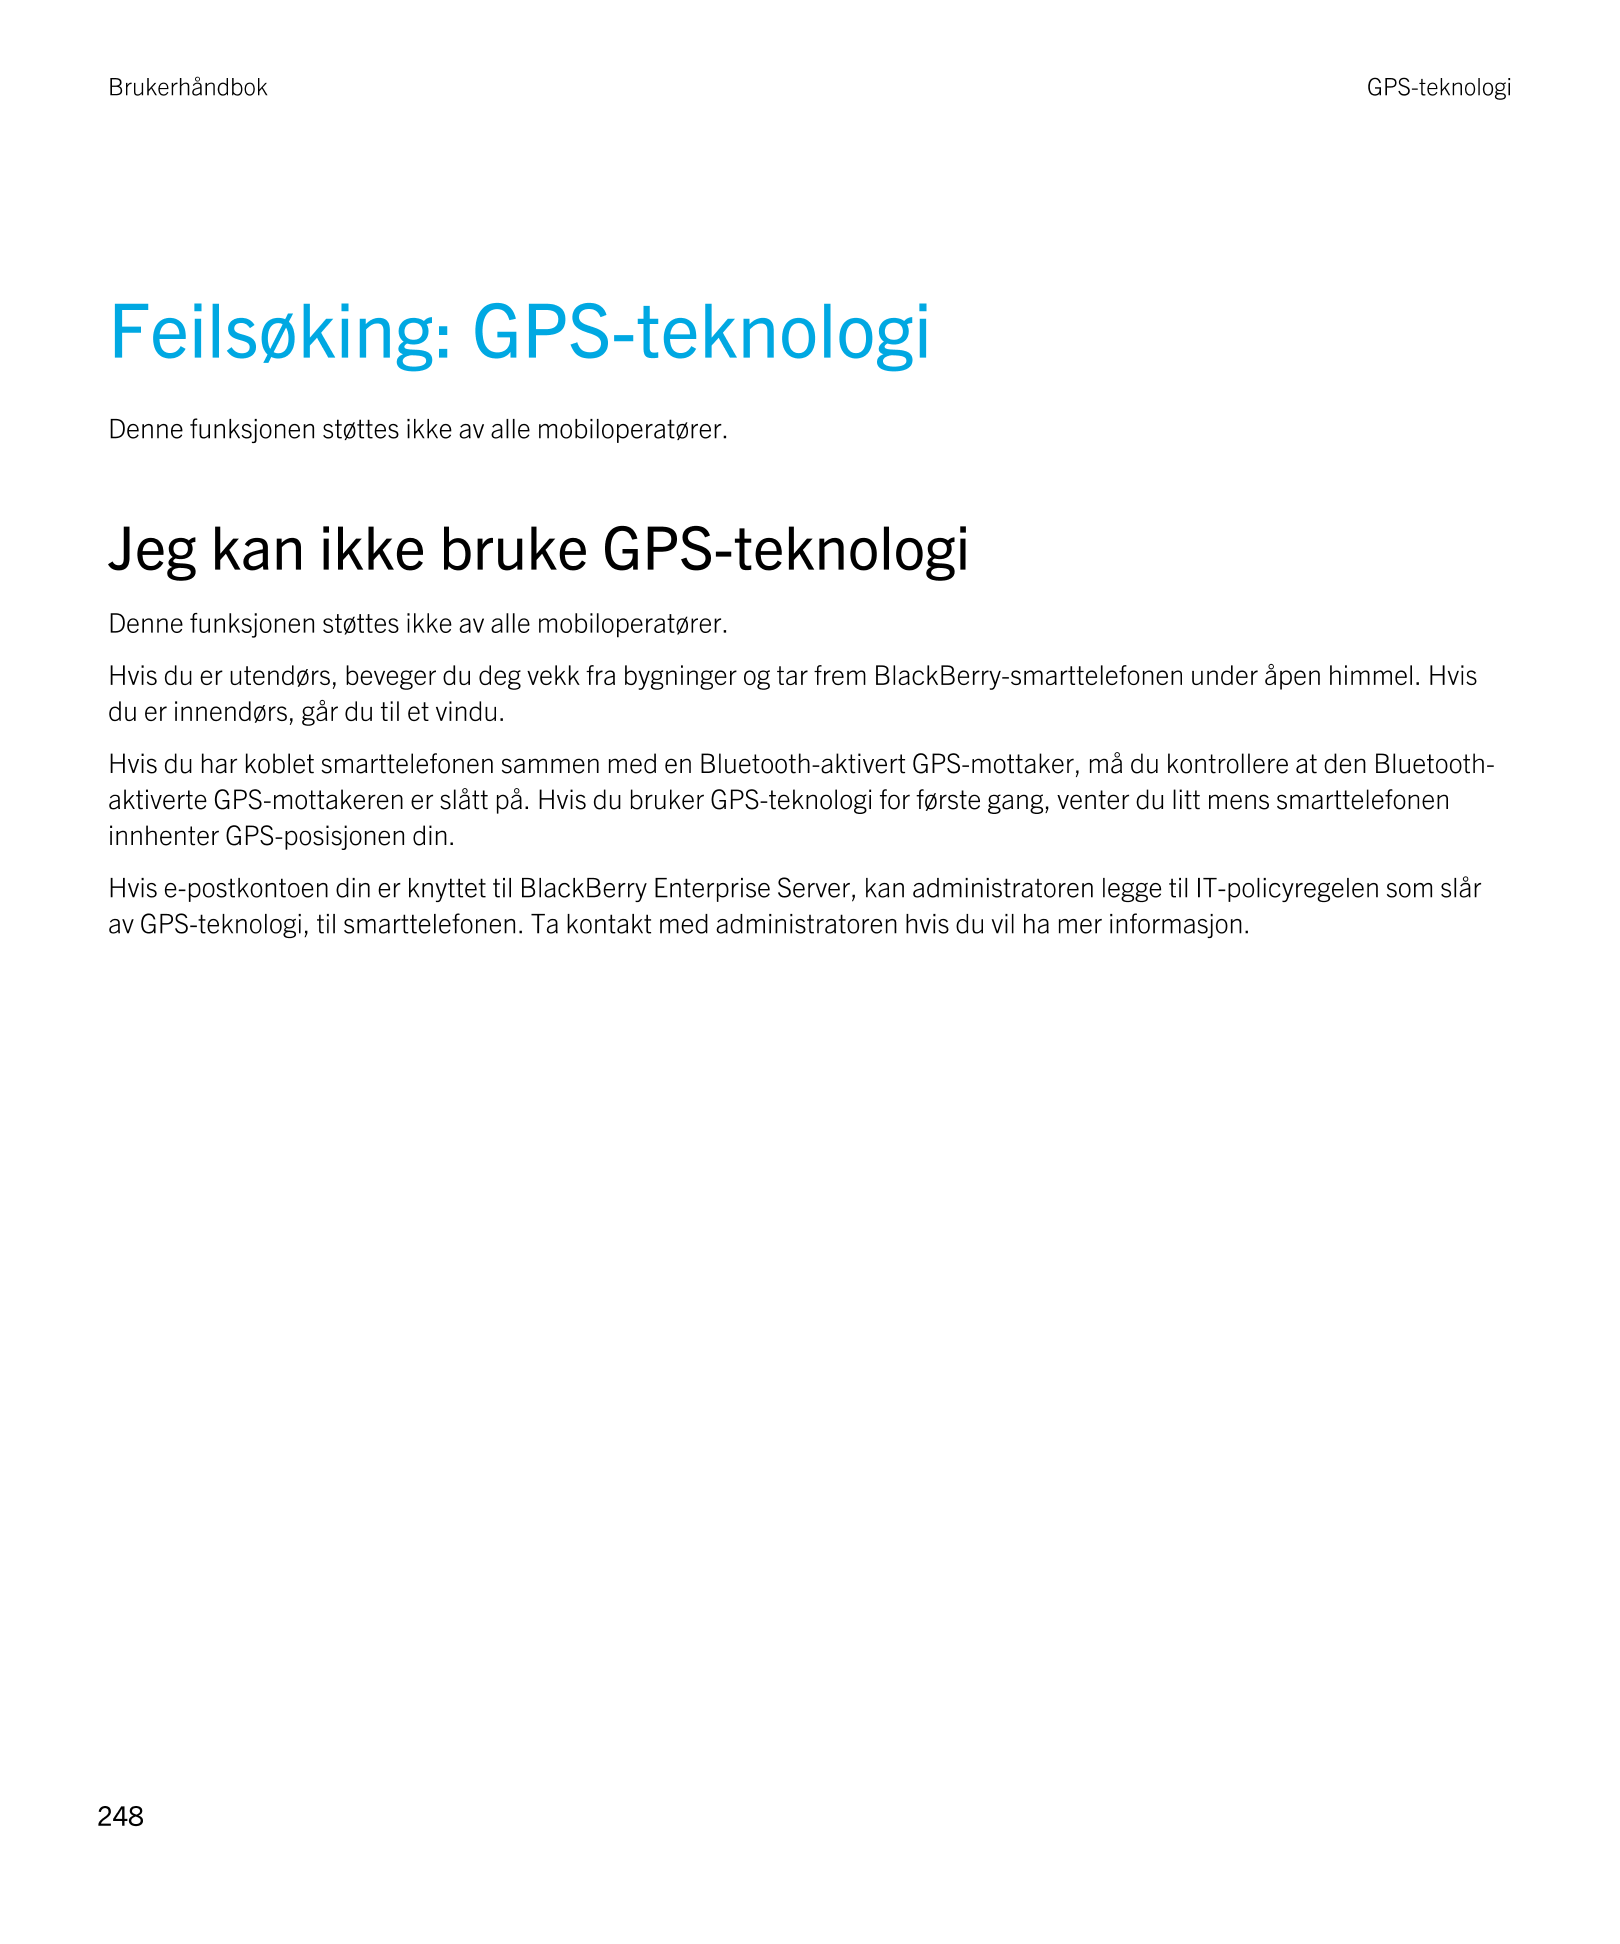 Brukerhåndbok GPS-teknologi
Feilsøking: GPS-teknologi
Denne funksjonen støttes ikke av alle mobiloperatører. 
Jeg kan ikke bruke